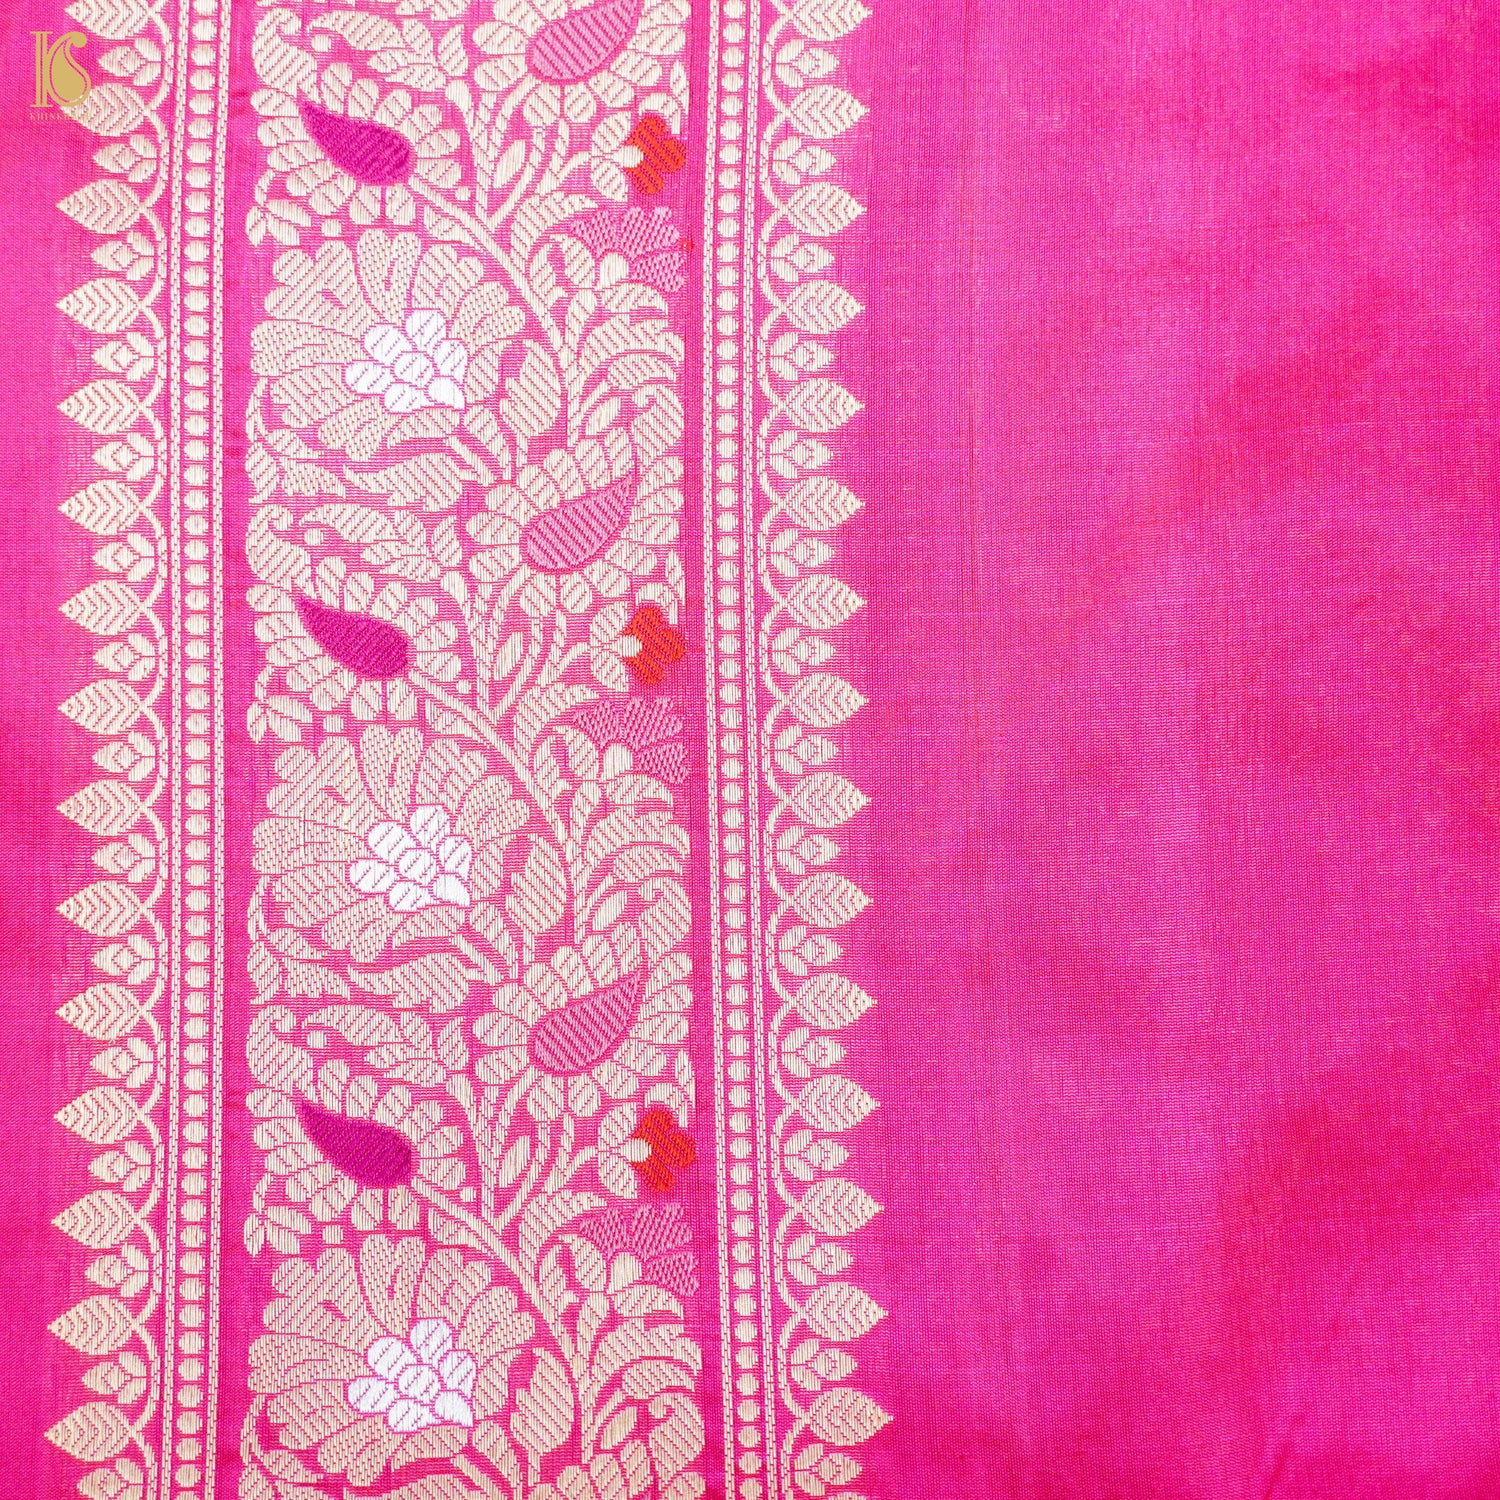 Handloom Banarasi Pure Katan Silk Cerise Pink Tanchoi Saree - Khinkhwab